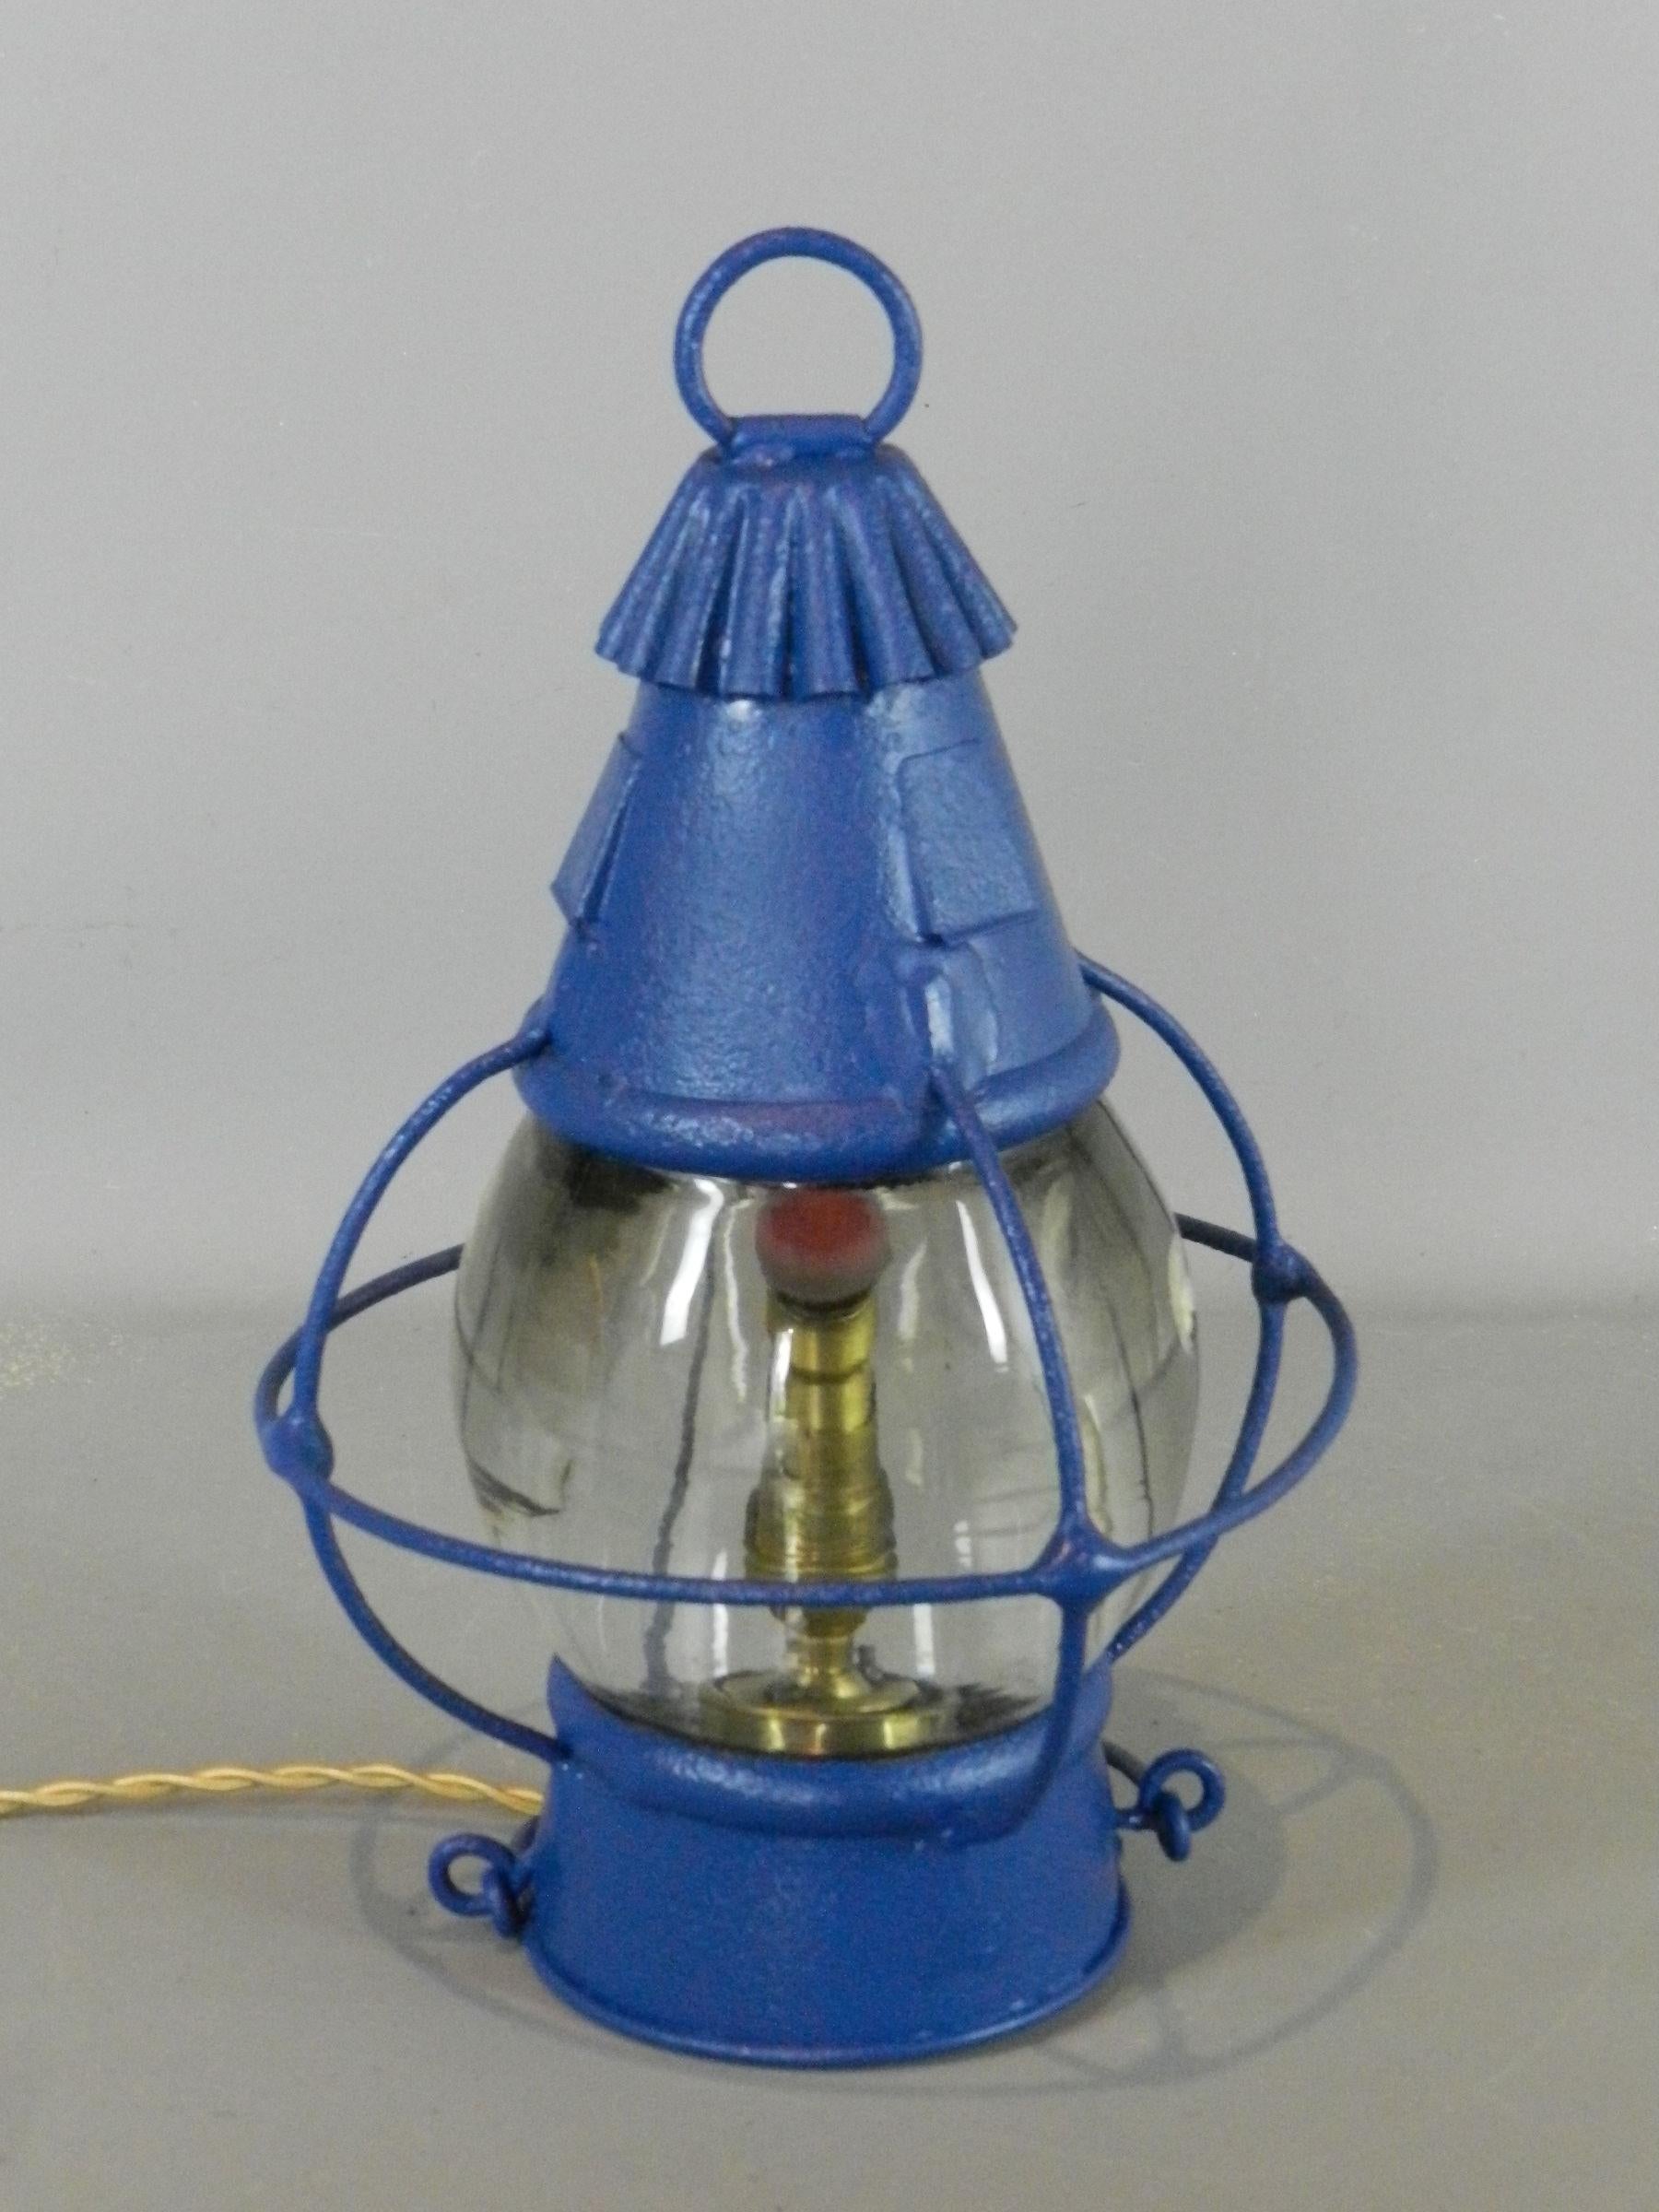 Une lanterne à huile de bateau d'origine qui a été convertie à l'électricité et qui peut être utilisée comme lampe de table ou lampe suspendue.

Le verre présente des bulles et des inclusions correspondant à son âge.

La lanterne a été repeinte et